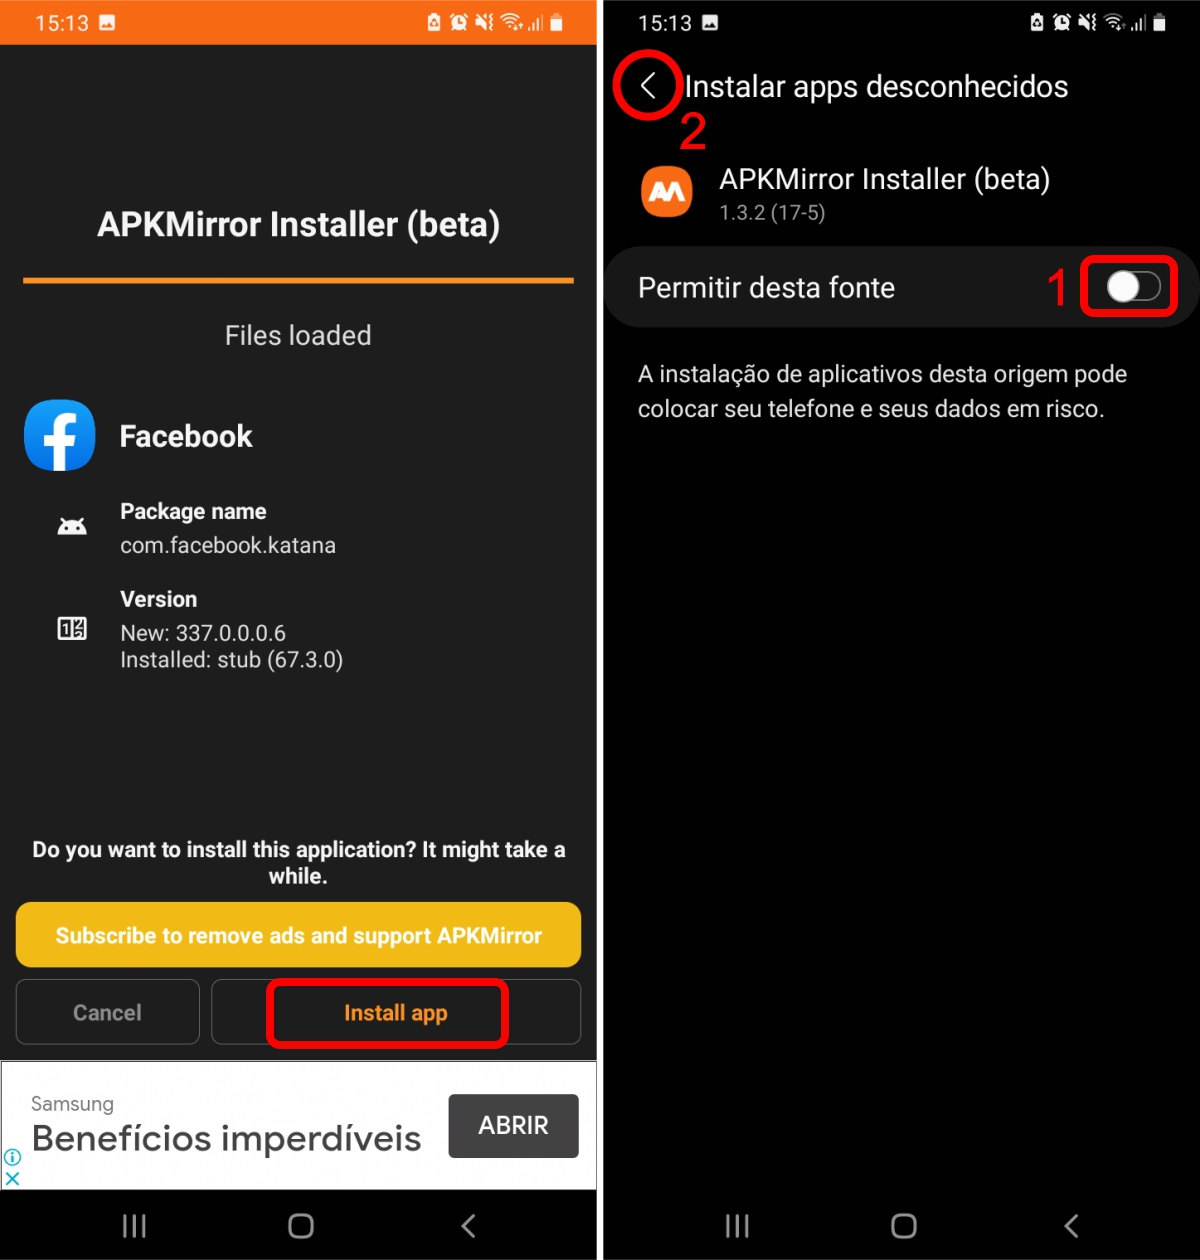 Toque em install app e permita que o APKMirror instale aplicativos no celular